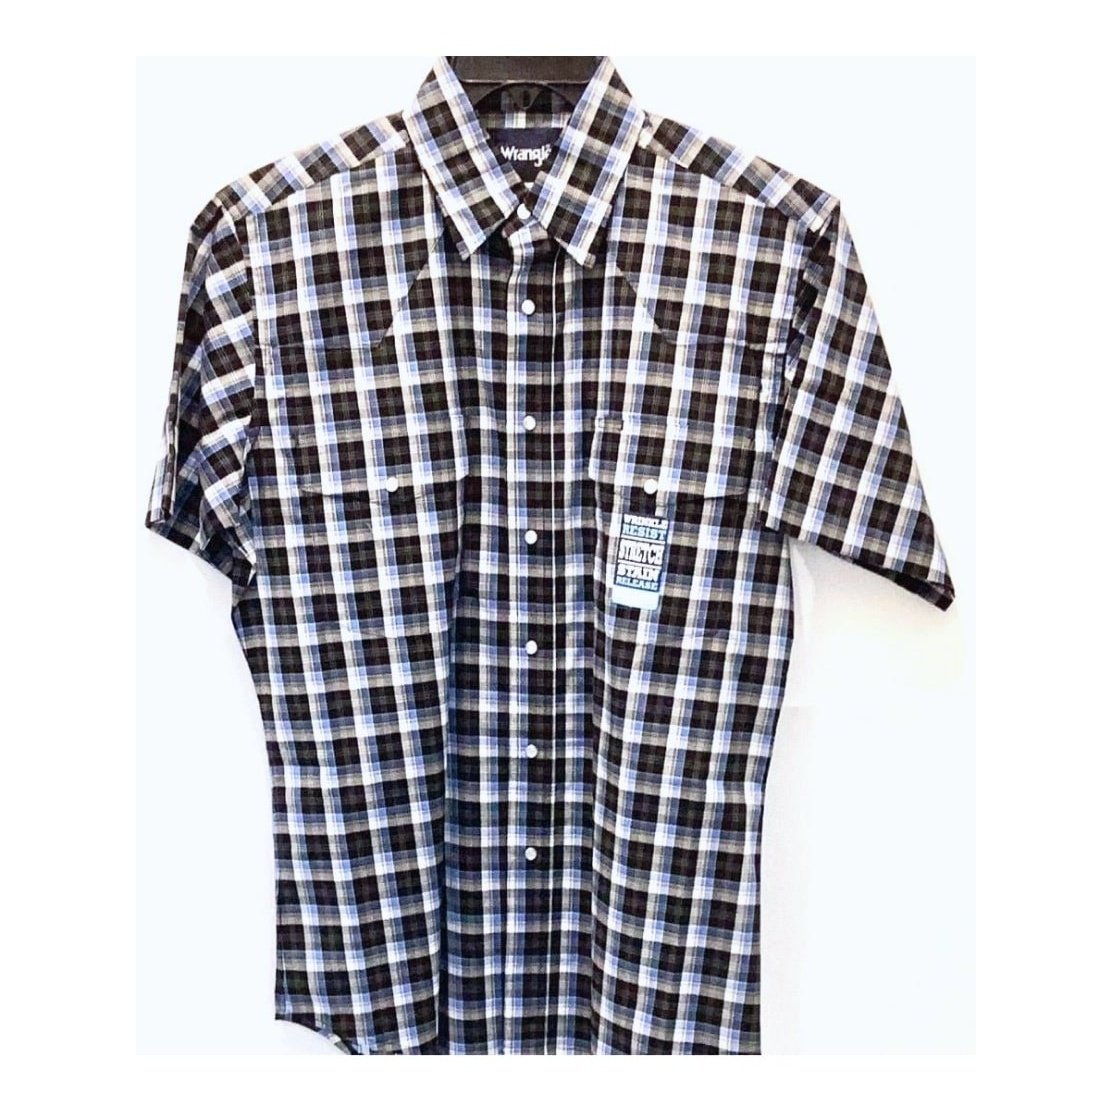 Wrangler Men’s Shirt Short Sleeve Plaid Snaps MWR27M - Wrangler